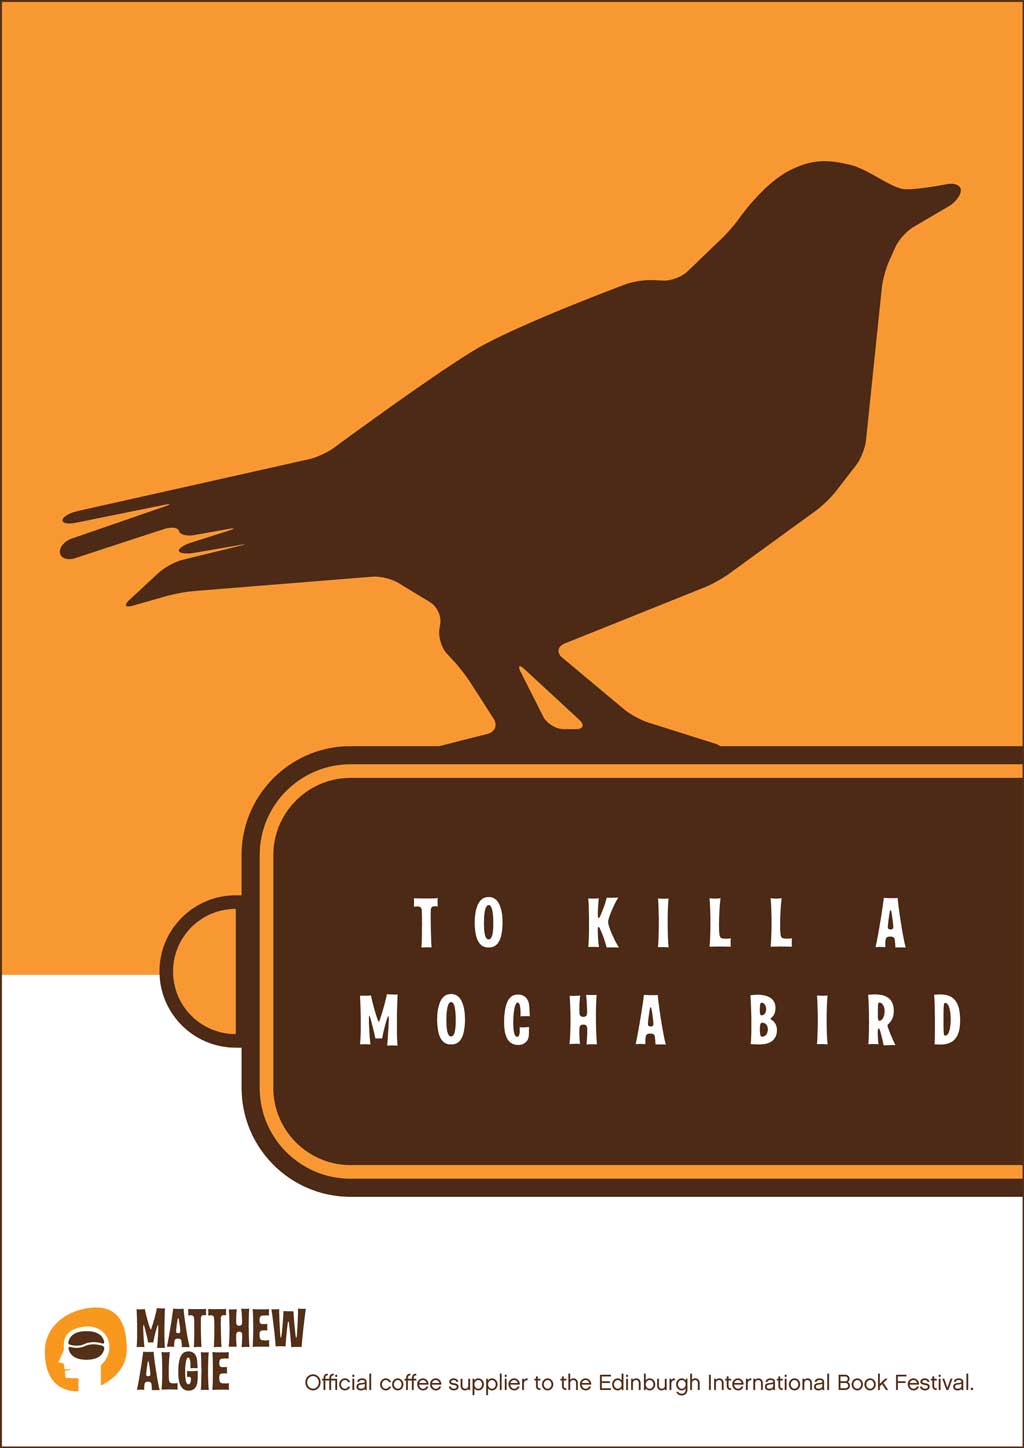 To kill a mocha bird